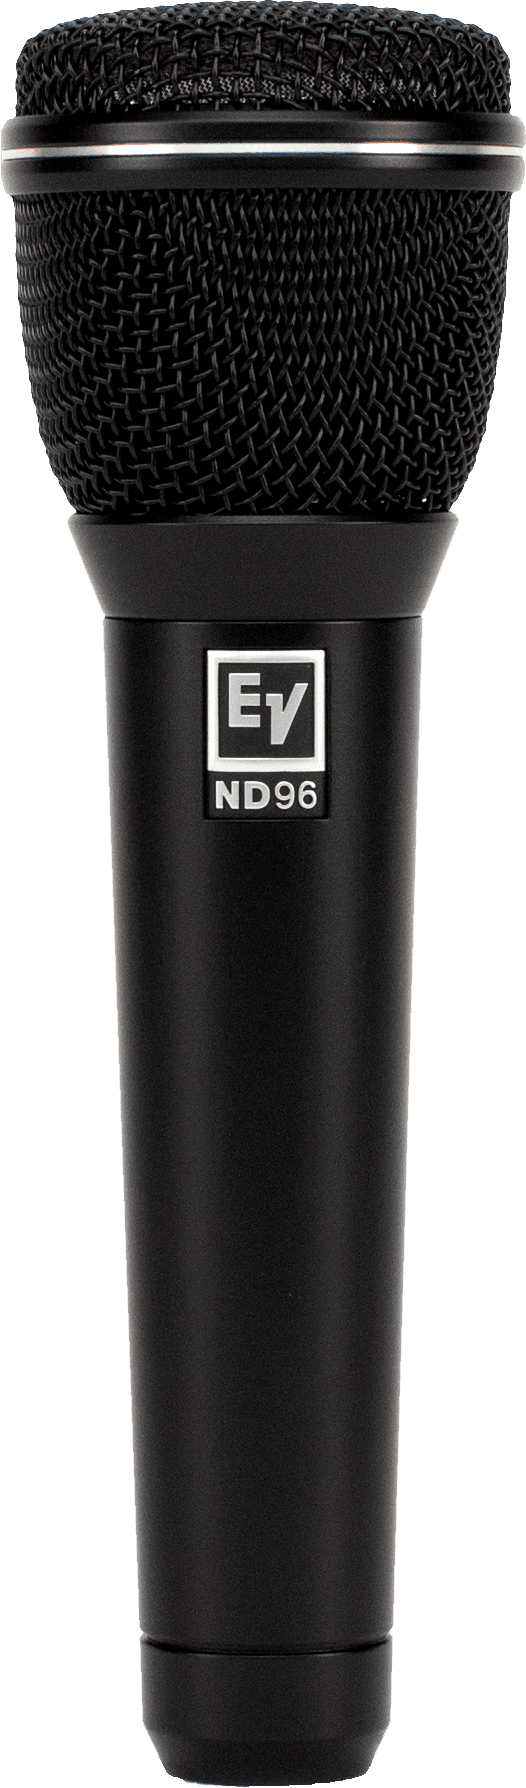 Electro-Voice EV ND96